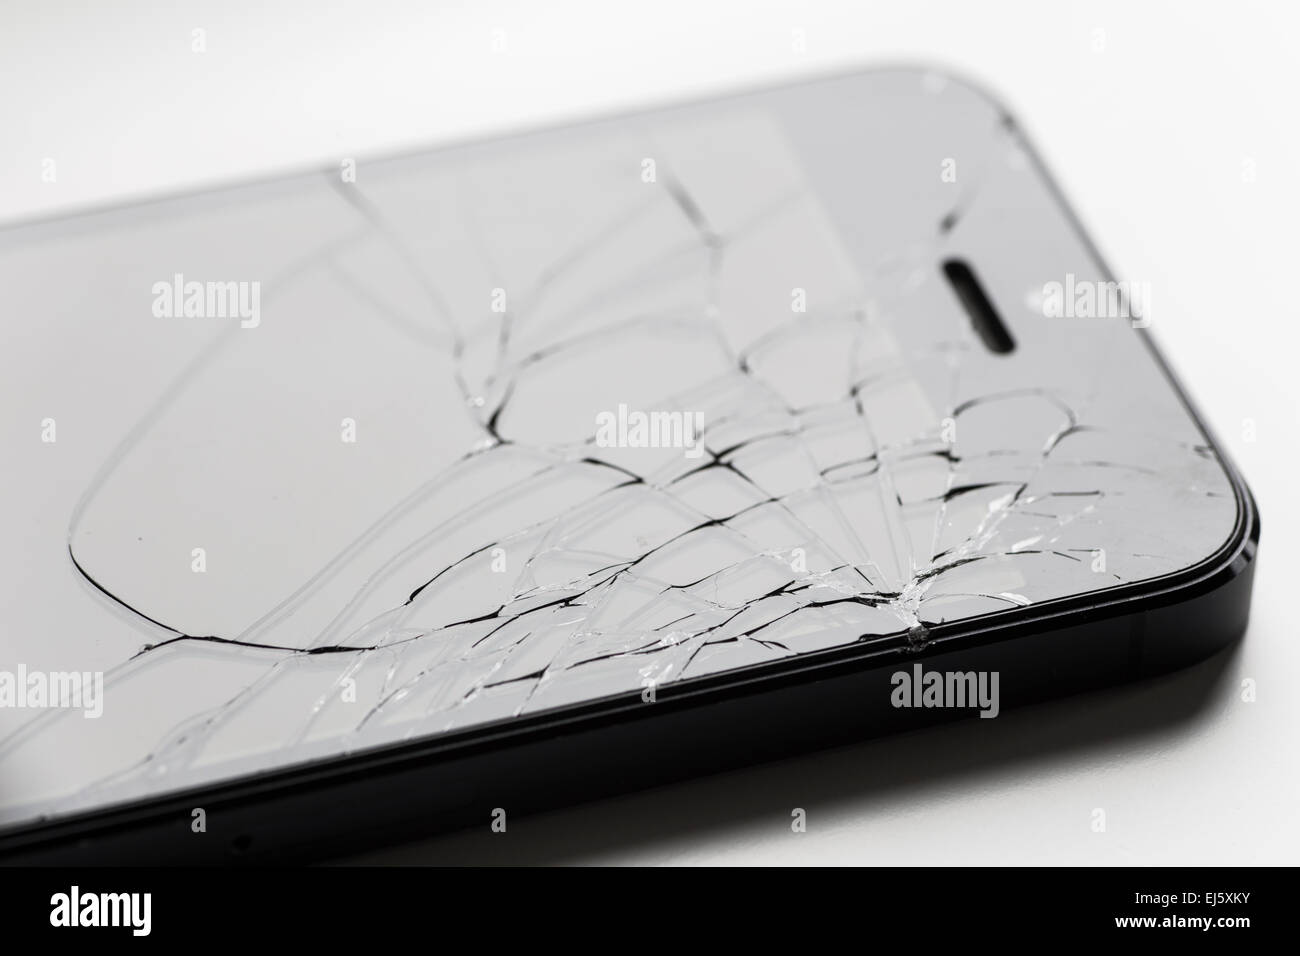 Broken Apple iPhone 5 screen. Stock Photo